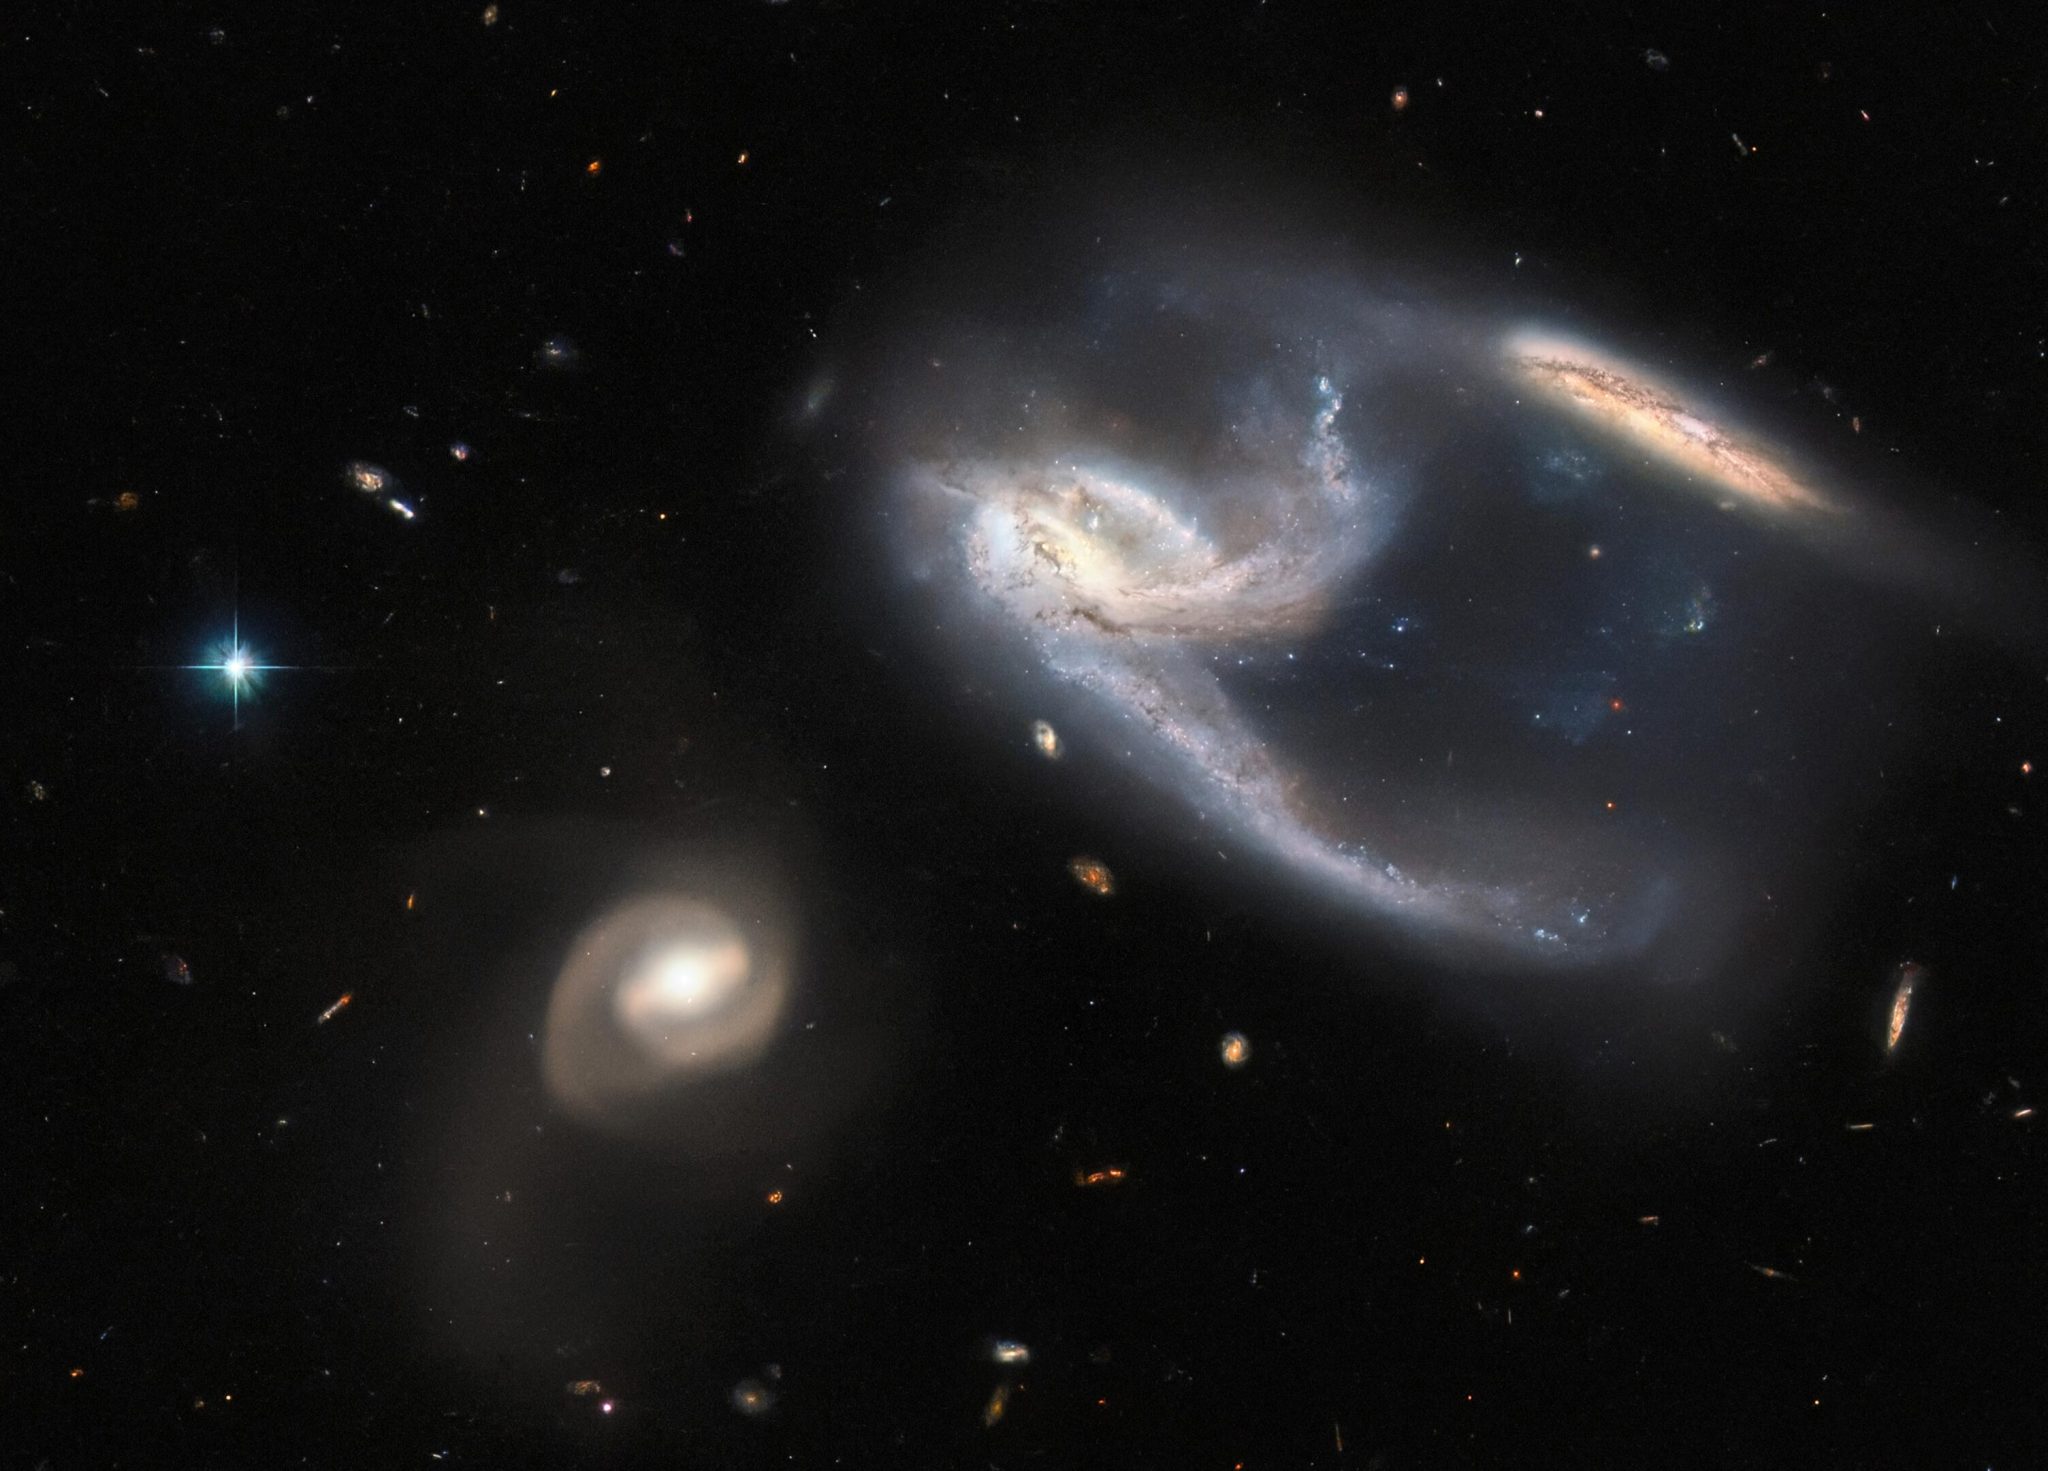 哈勃太空望远镜拍摄的凤凰座星系NGC 7764A